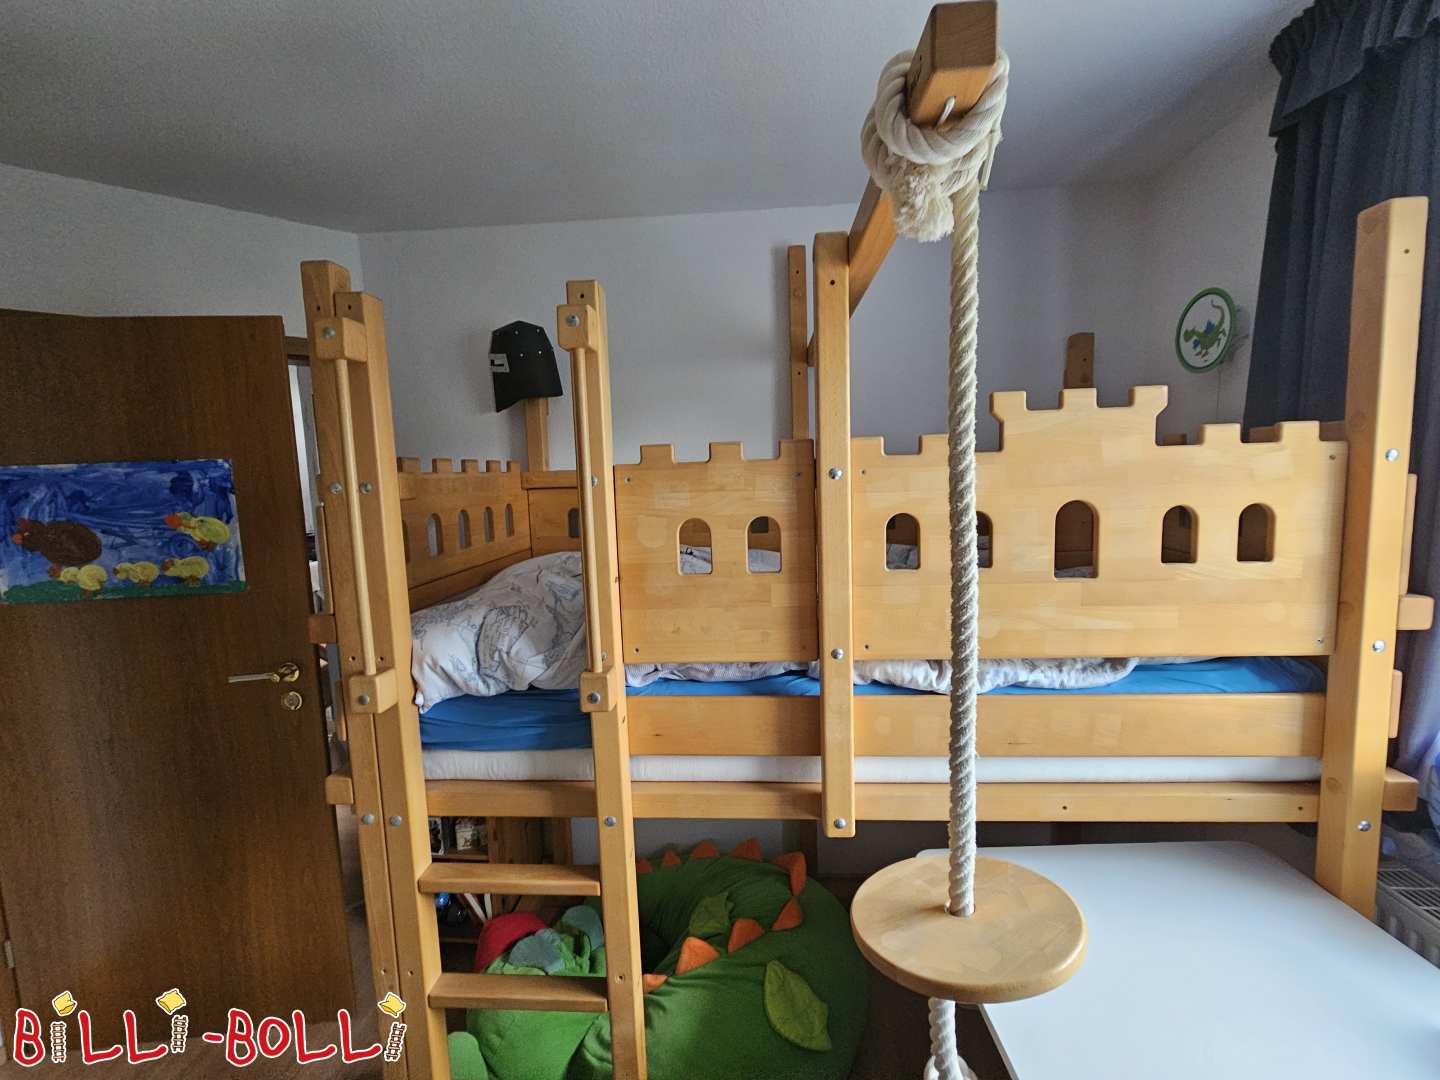 Llit tipus loft que creix amb el nen, 90x190, cera d'oli de faig, llit del castell del cavaller (Varel) (Categoria: Llit tipus loft creixent amb el nen used)